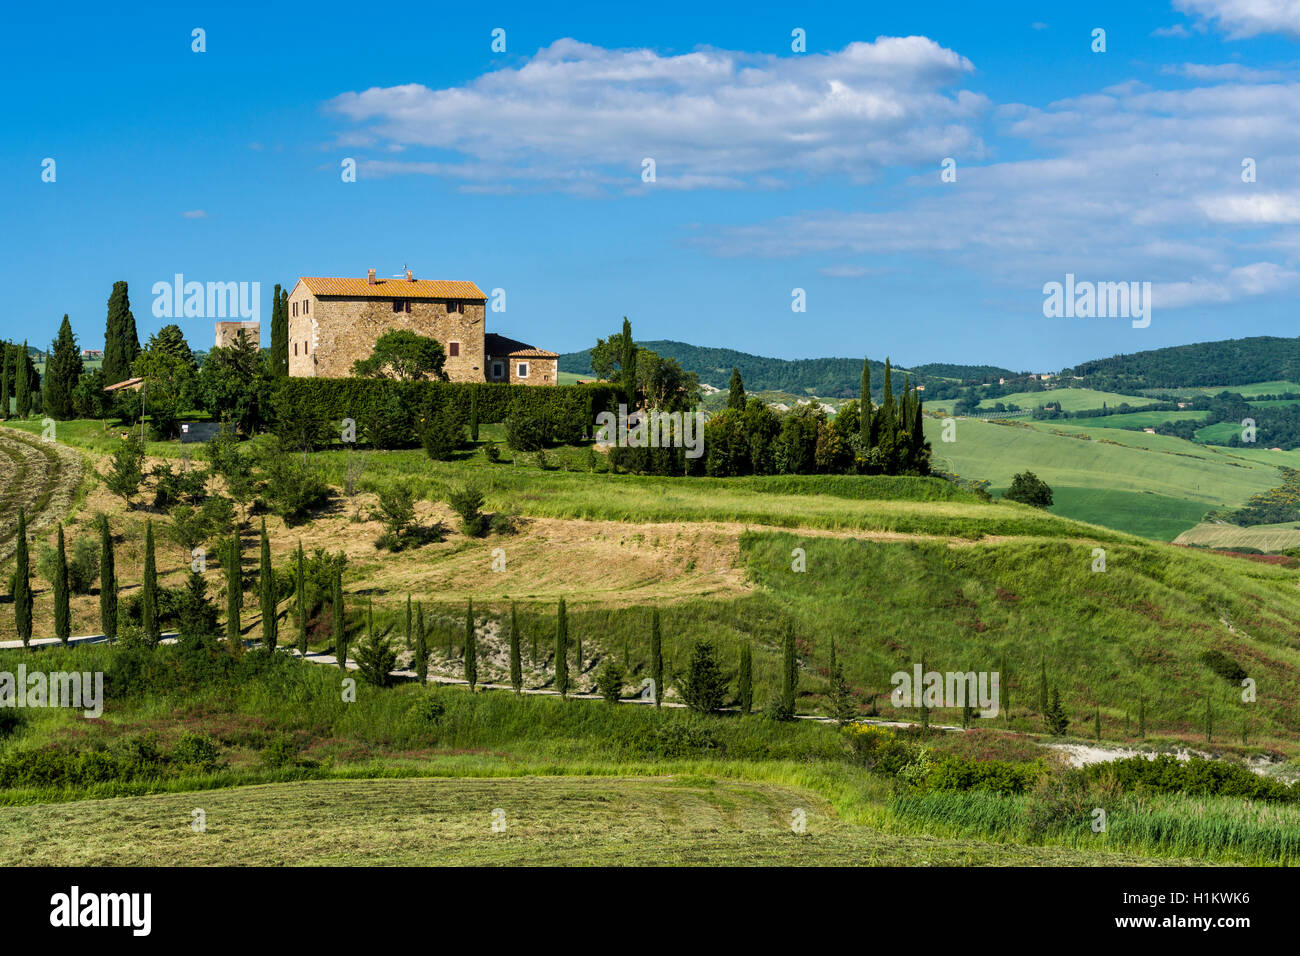 Typische Grün der toskanischen Landschaft im Val d'Orcia, Bauernhof auf einem Hügel, Felder, Bäume, Zypressen und blauen bewölkten Himmel, La Foce, Toskana Stockfoto